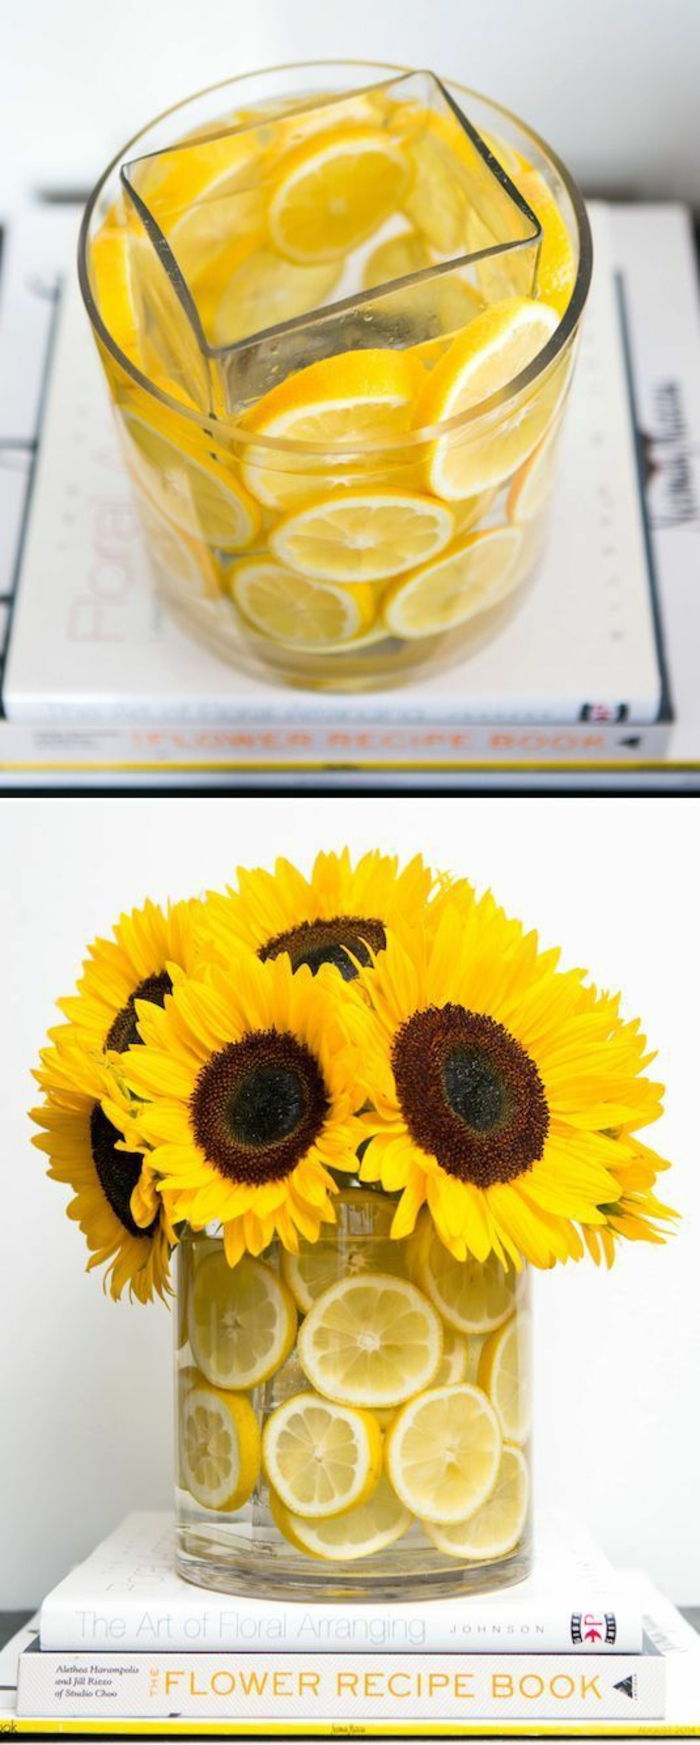 Steklena vaza, okrašena z limonino lupino, rumeno cvetje, sončnice